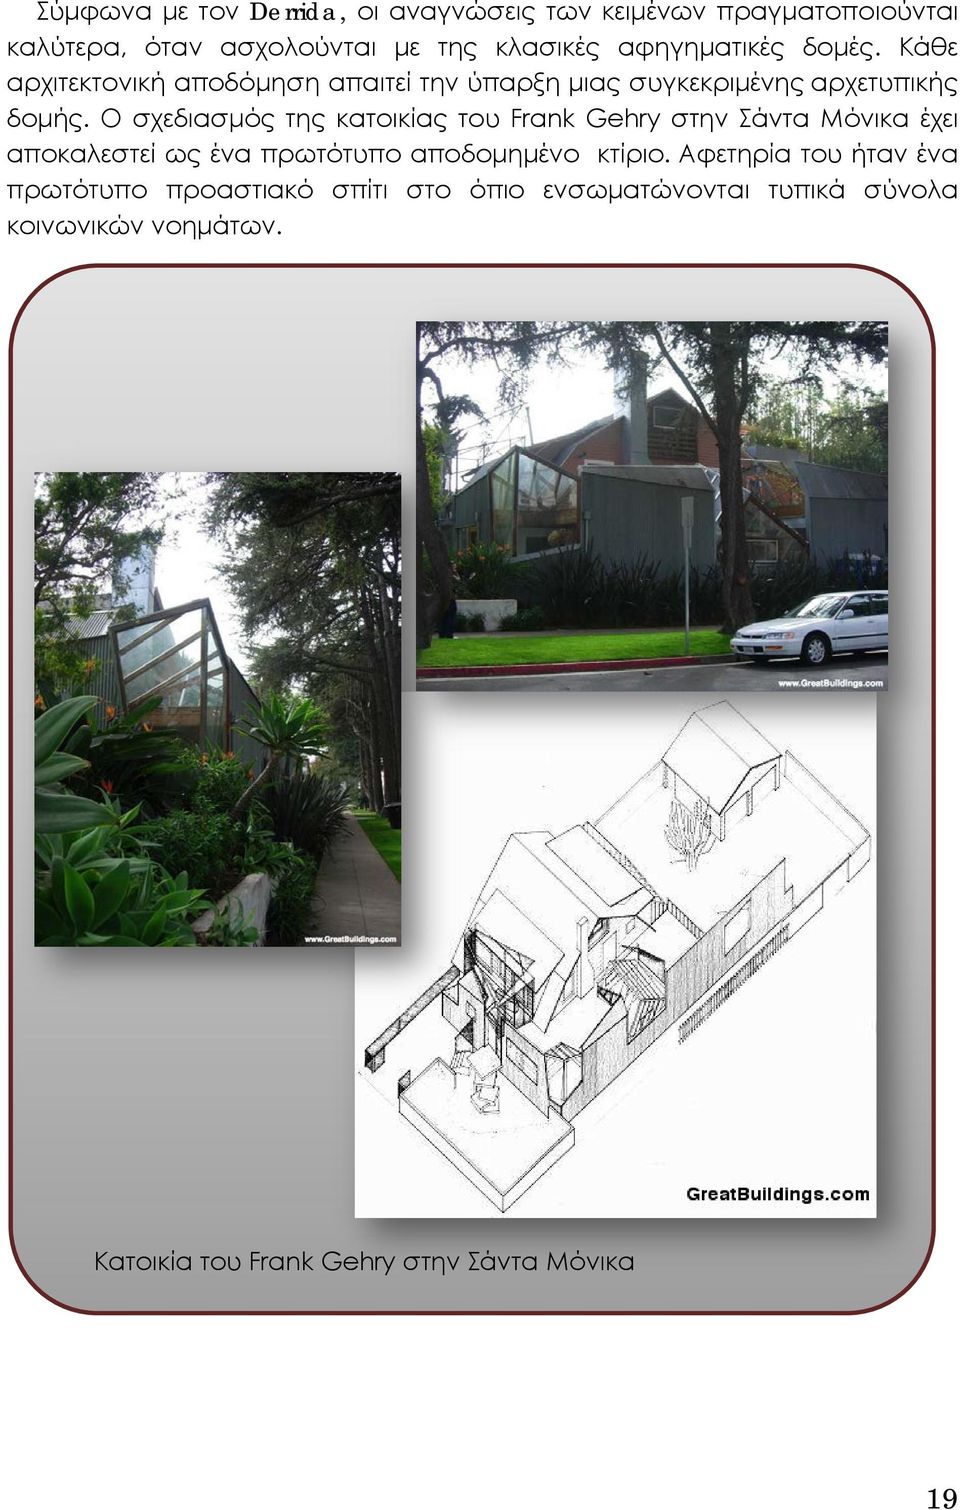 Ο σχεδιασμός της κατοικίας του Frank Gehry στην Σάντα Μόνικα έχει αποκαλεστεί ως ένα πρωτότυπο αποδομημένο κτίριο.